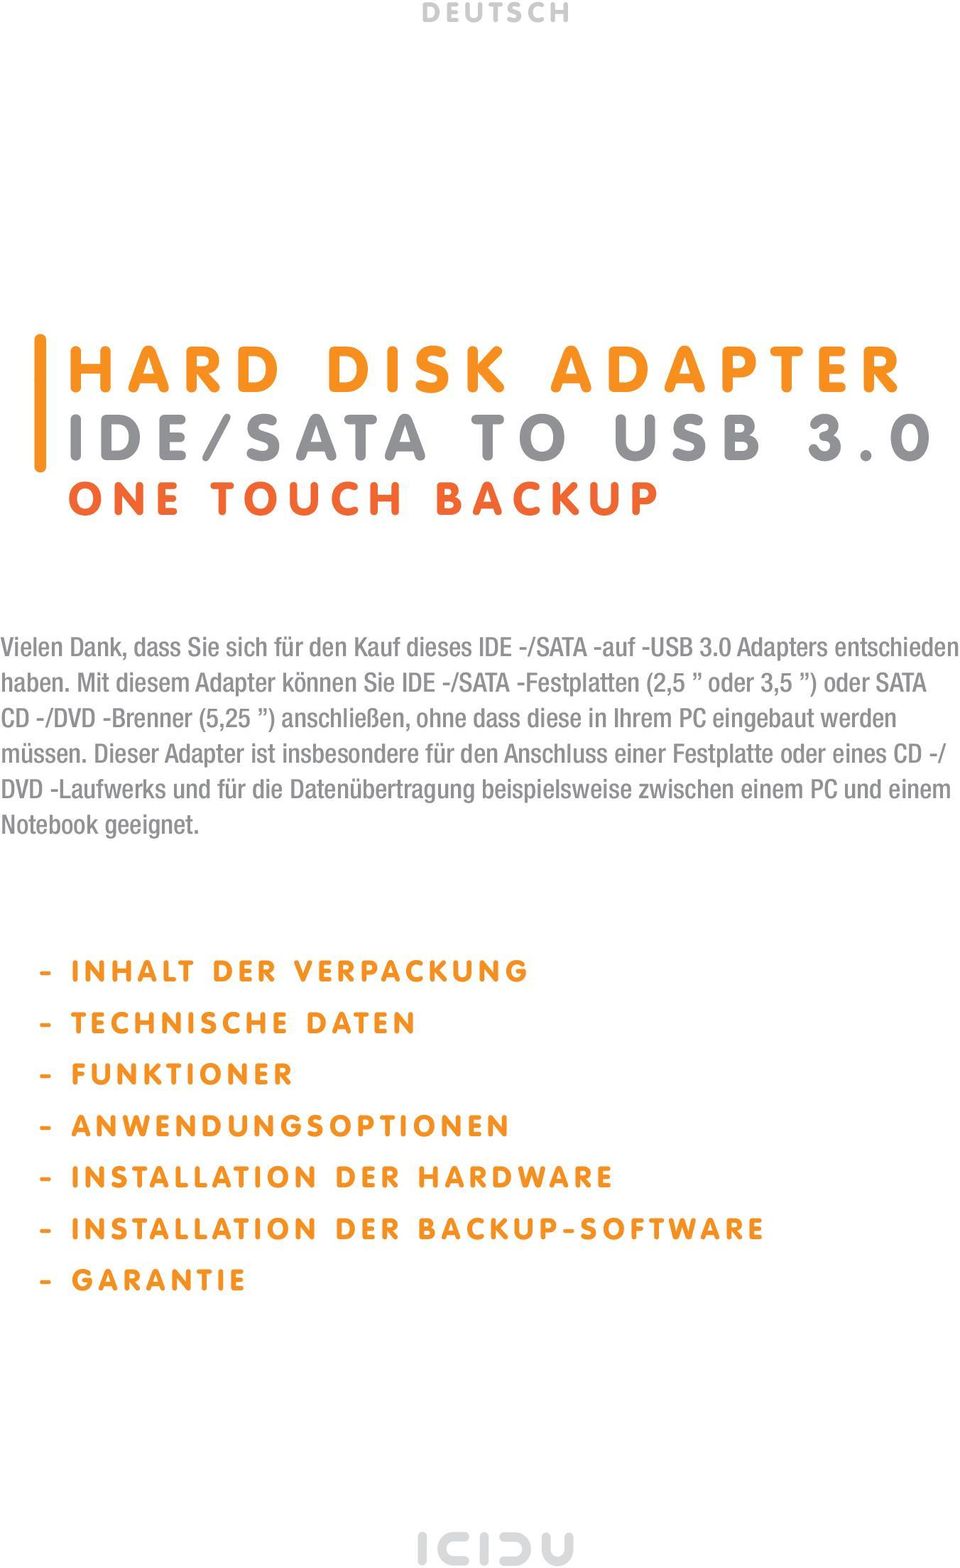 Mit diesem Adapter können Sie IDE -/SATA -Festplatten (2,5 oder 3,5 ) oder SATA CD -/DVD -Brenner (5,25 ) anschließen, ohne dass diese in Ihrem PC eingebaut werden müssen.